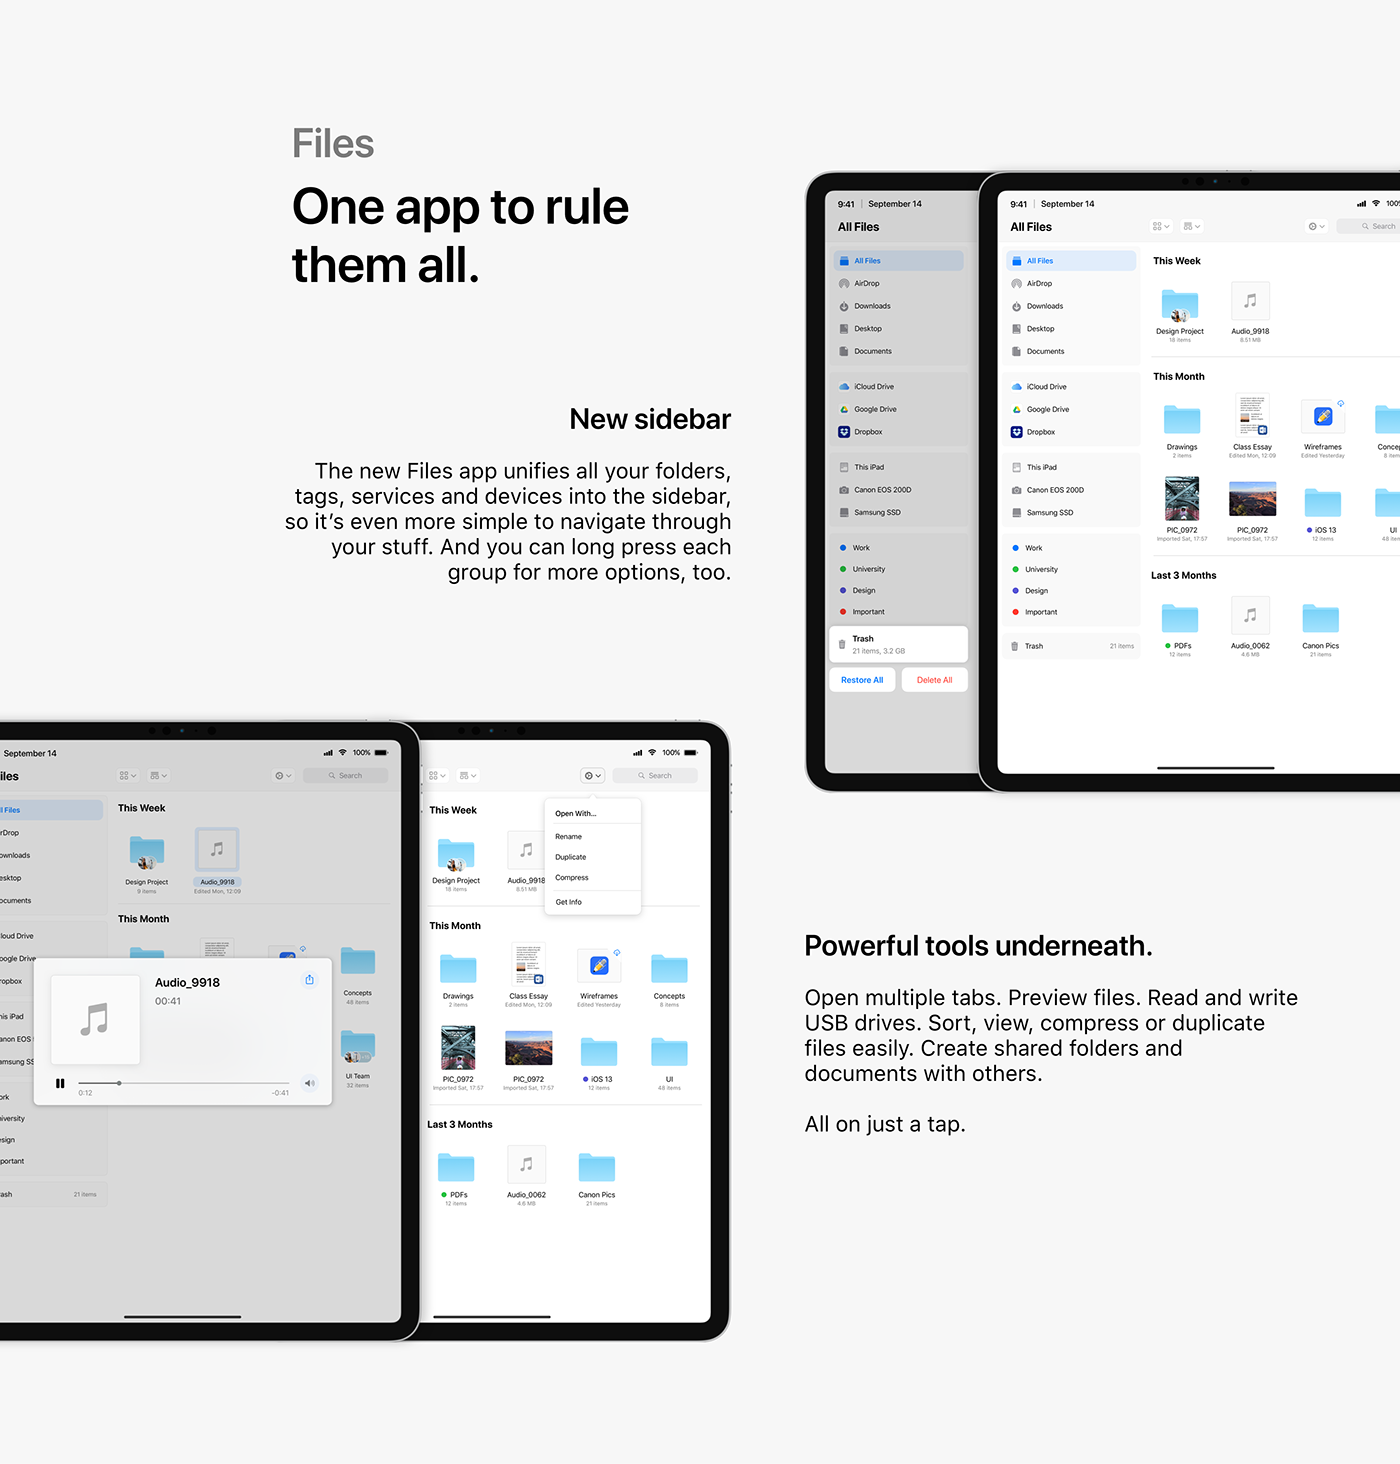 ios ios 13 iPad iphone concept UI/UX UI design apple macos